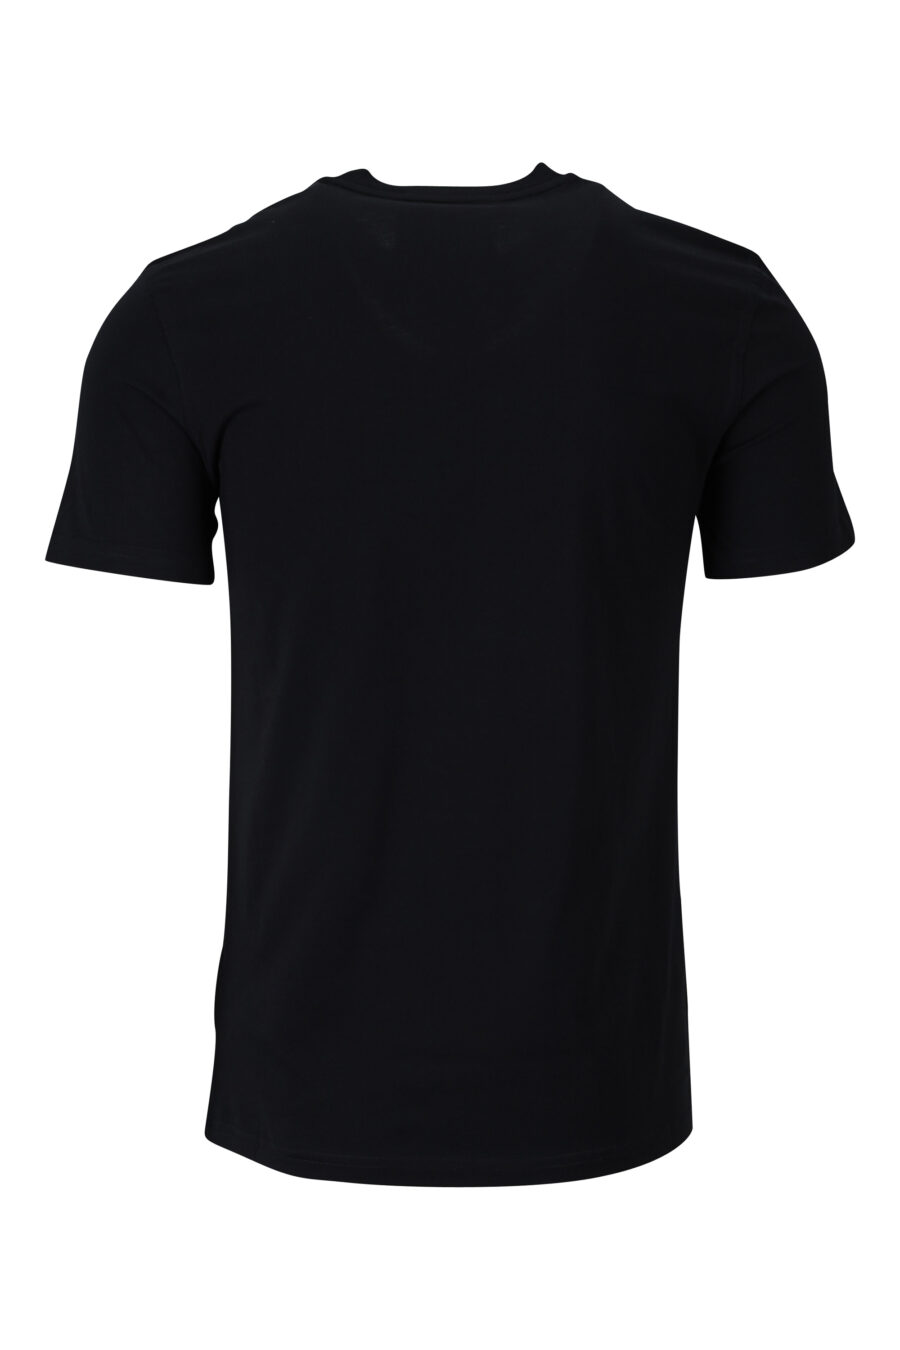 T-shirt noir en coton biologique avec maxilogo "teddy" - 889316854589 1